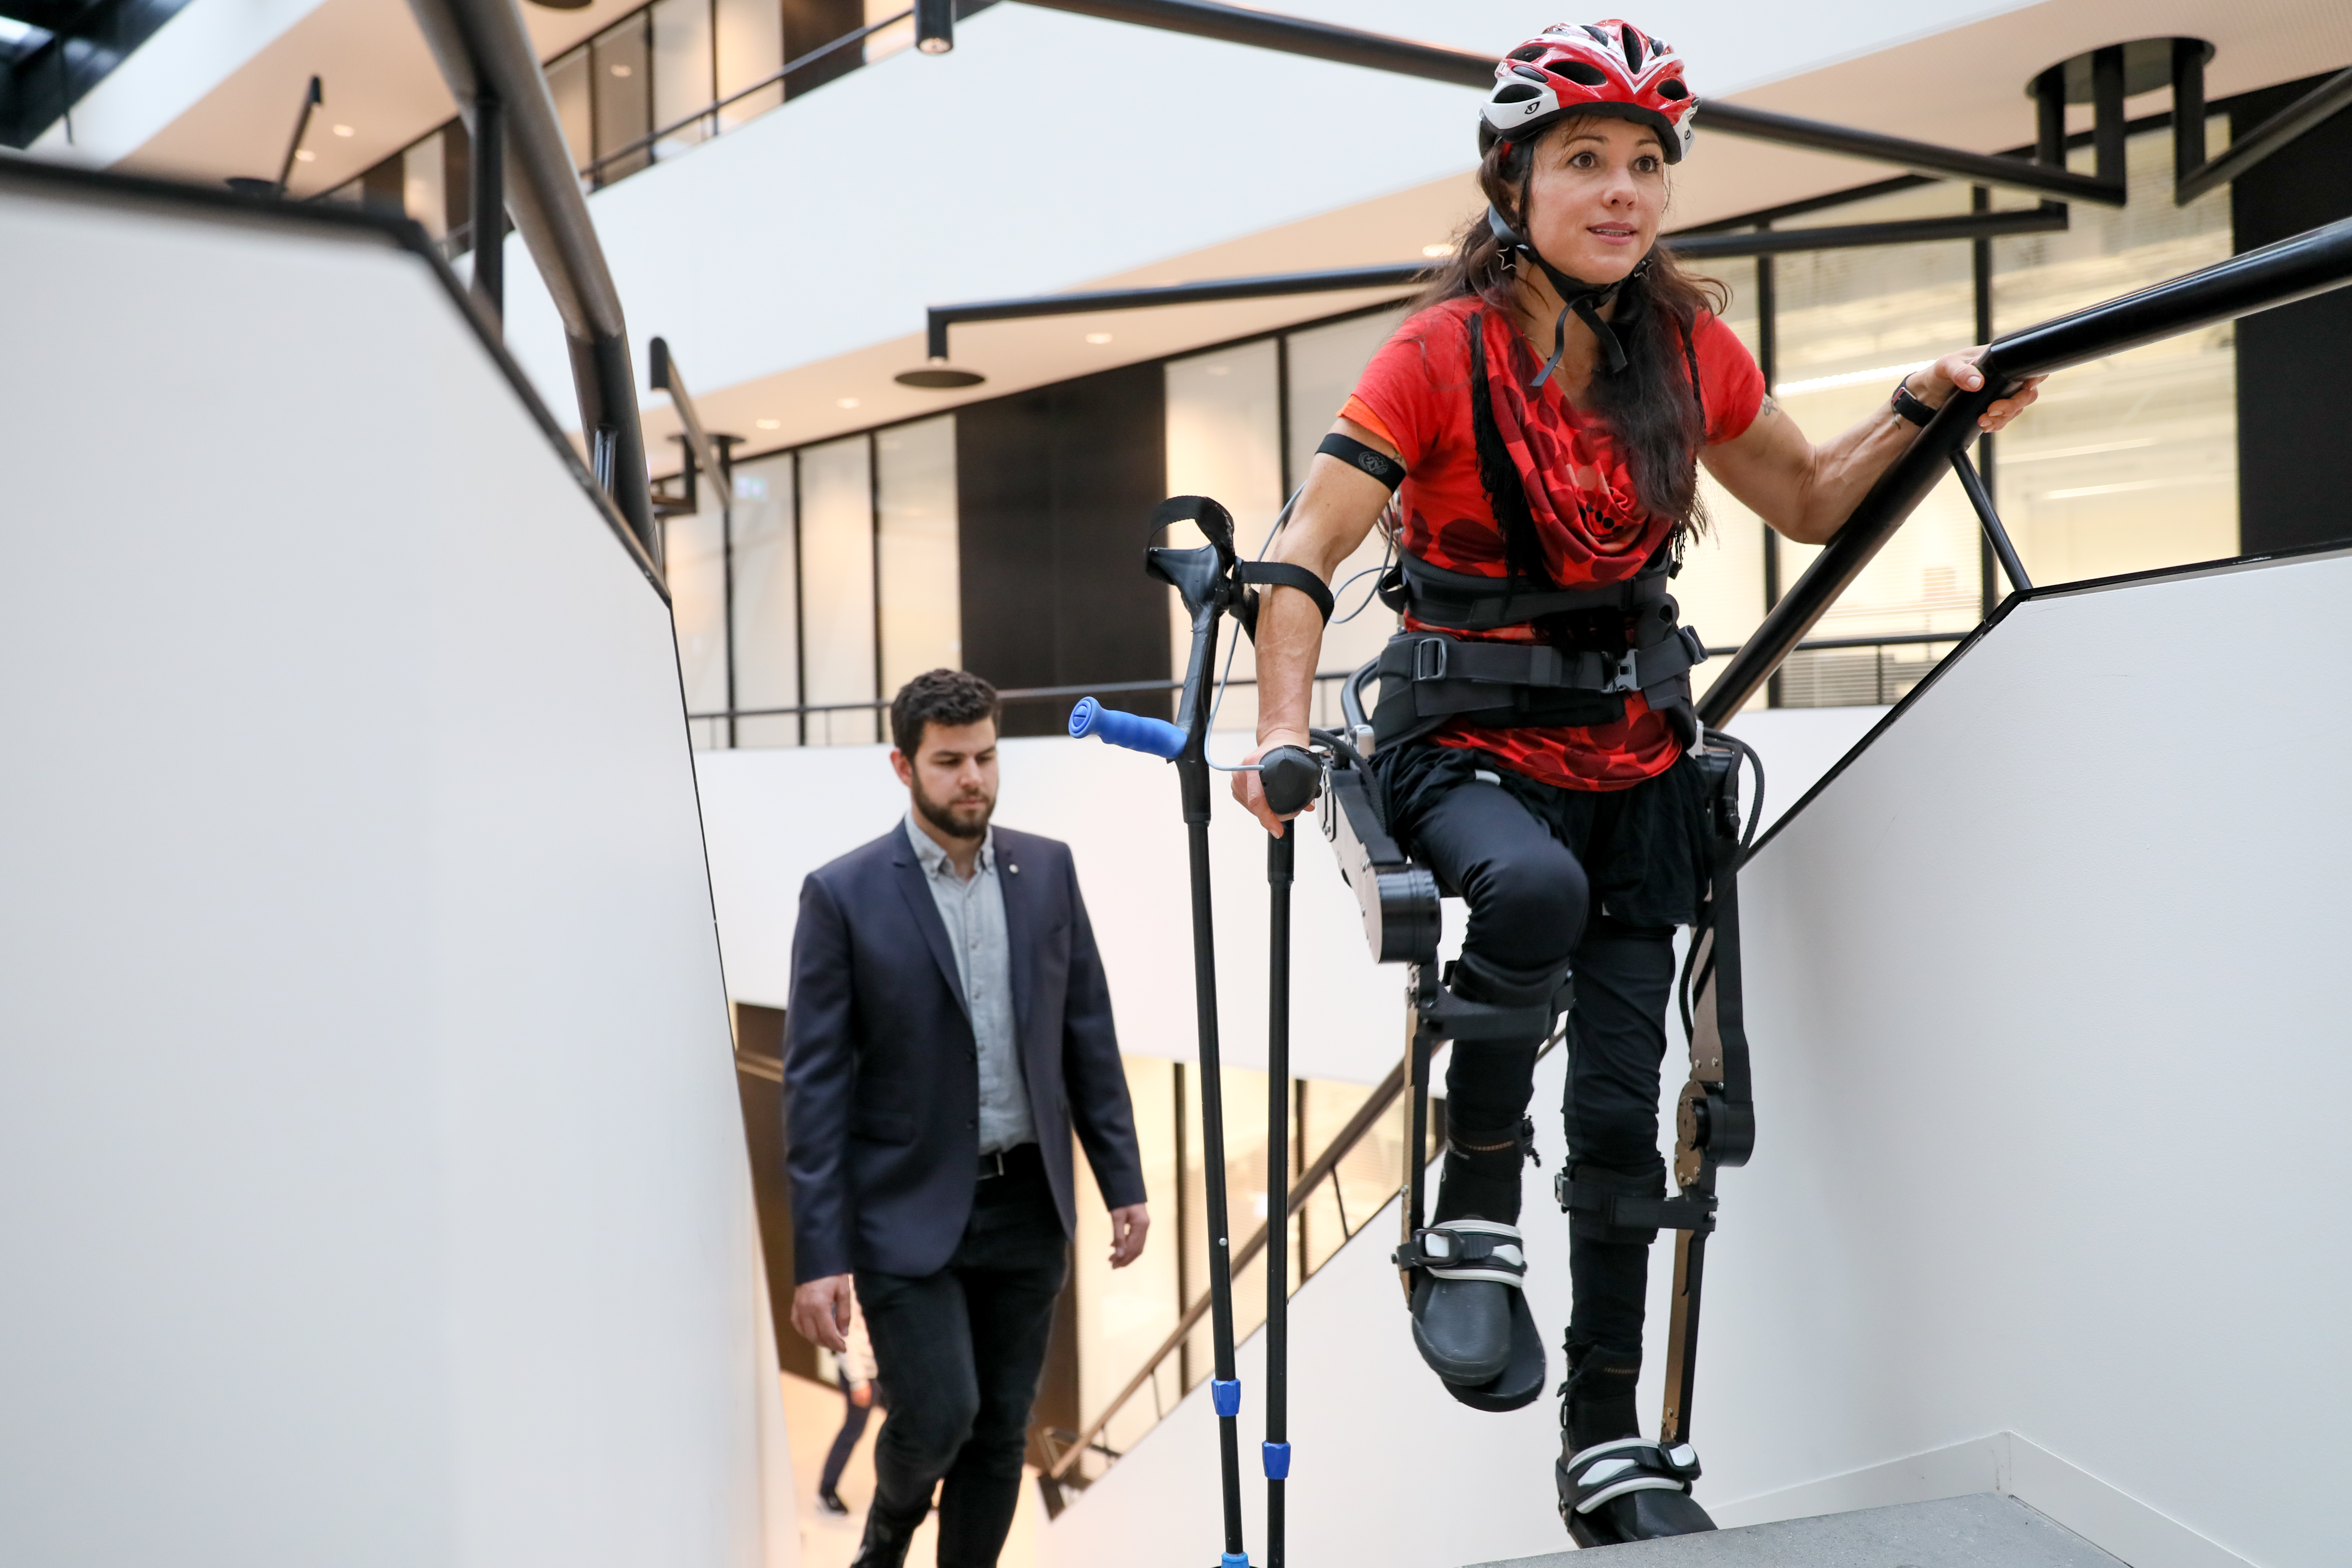 The exoskeleton  promising developments in robotics for 